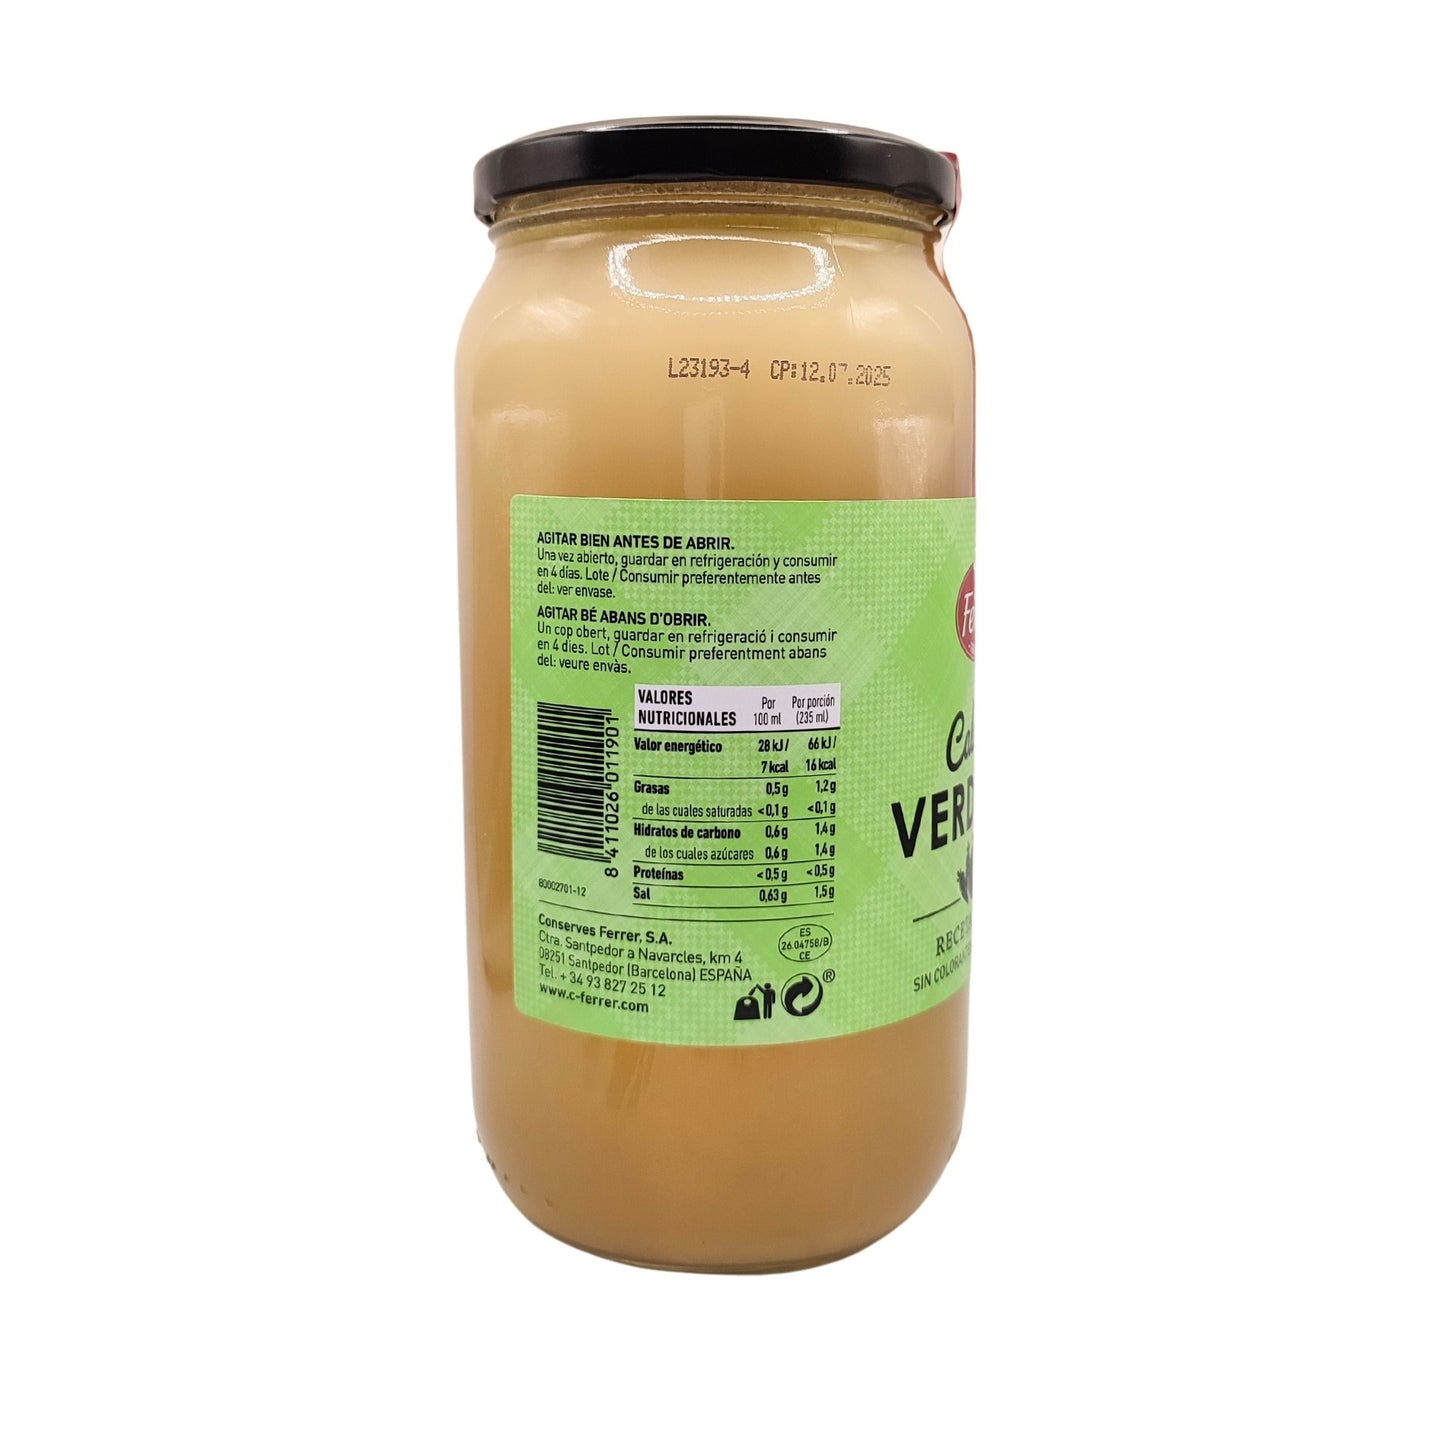 Caldo de verduras - 940 ml - Ferrer